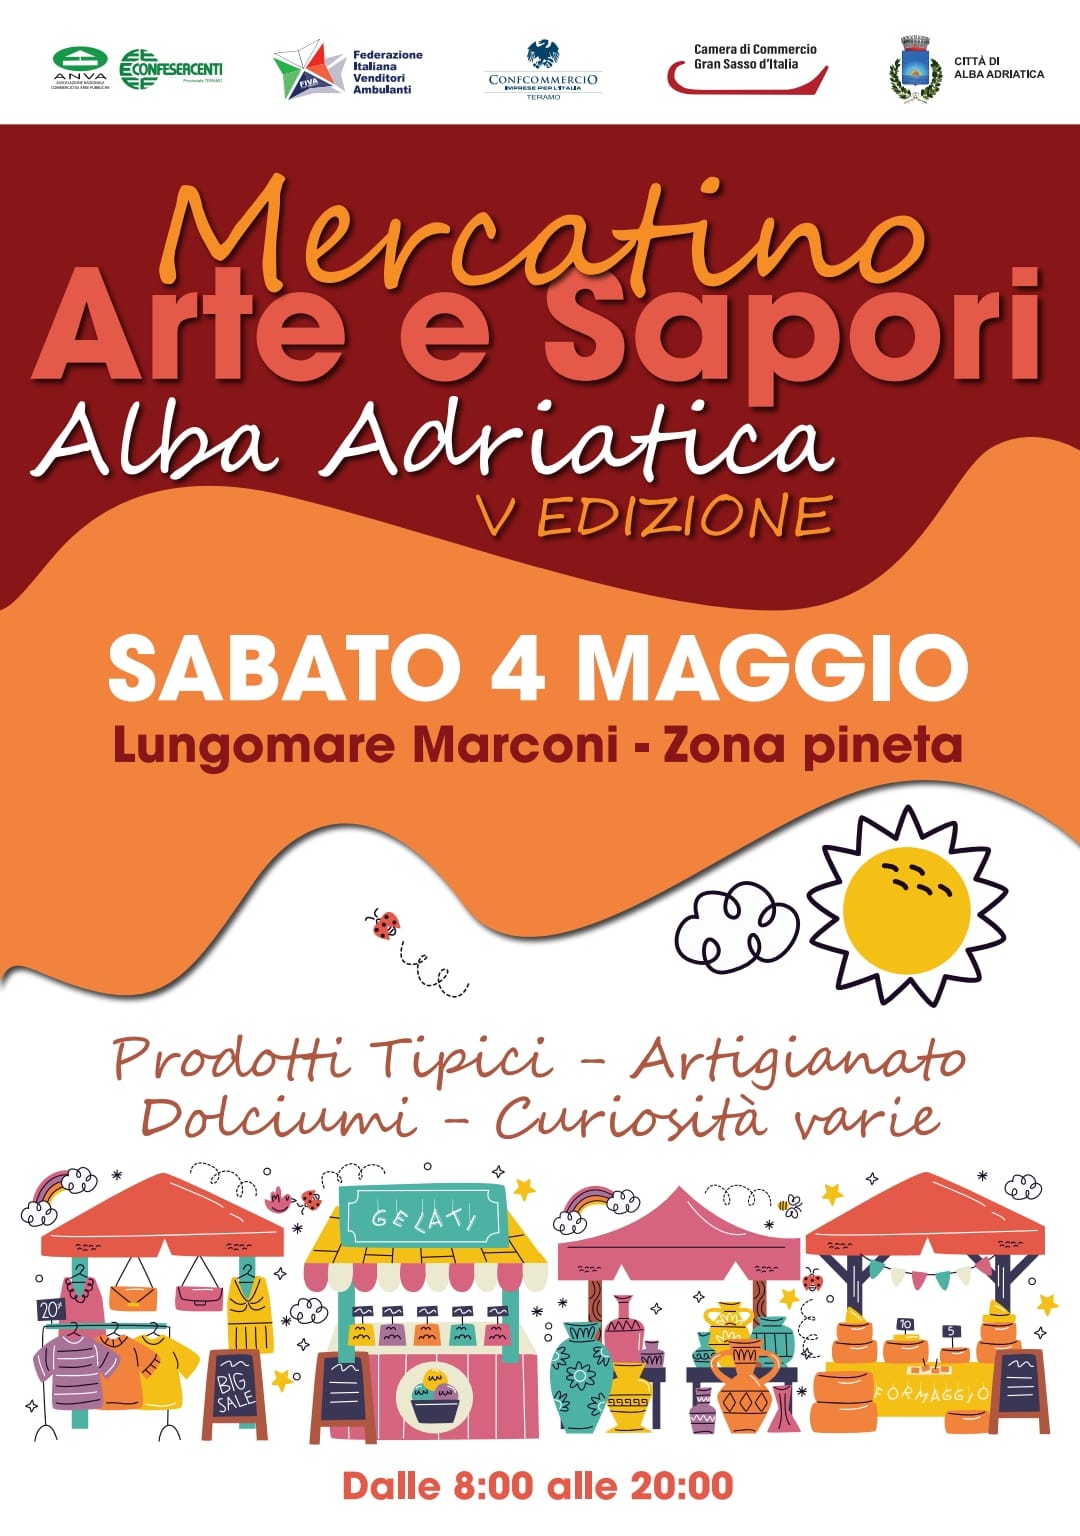 Arte e Sapori Alba Adriatica – Sabato 4 Maggio